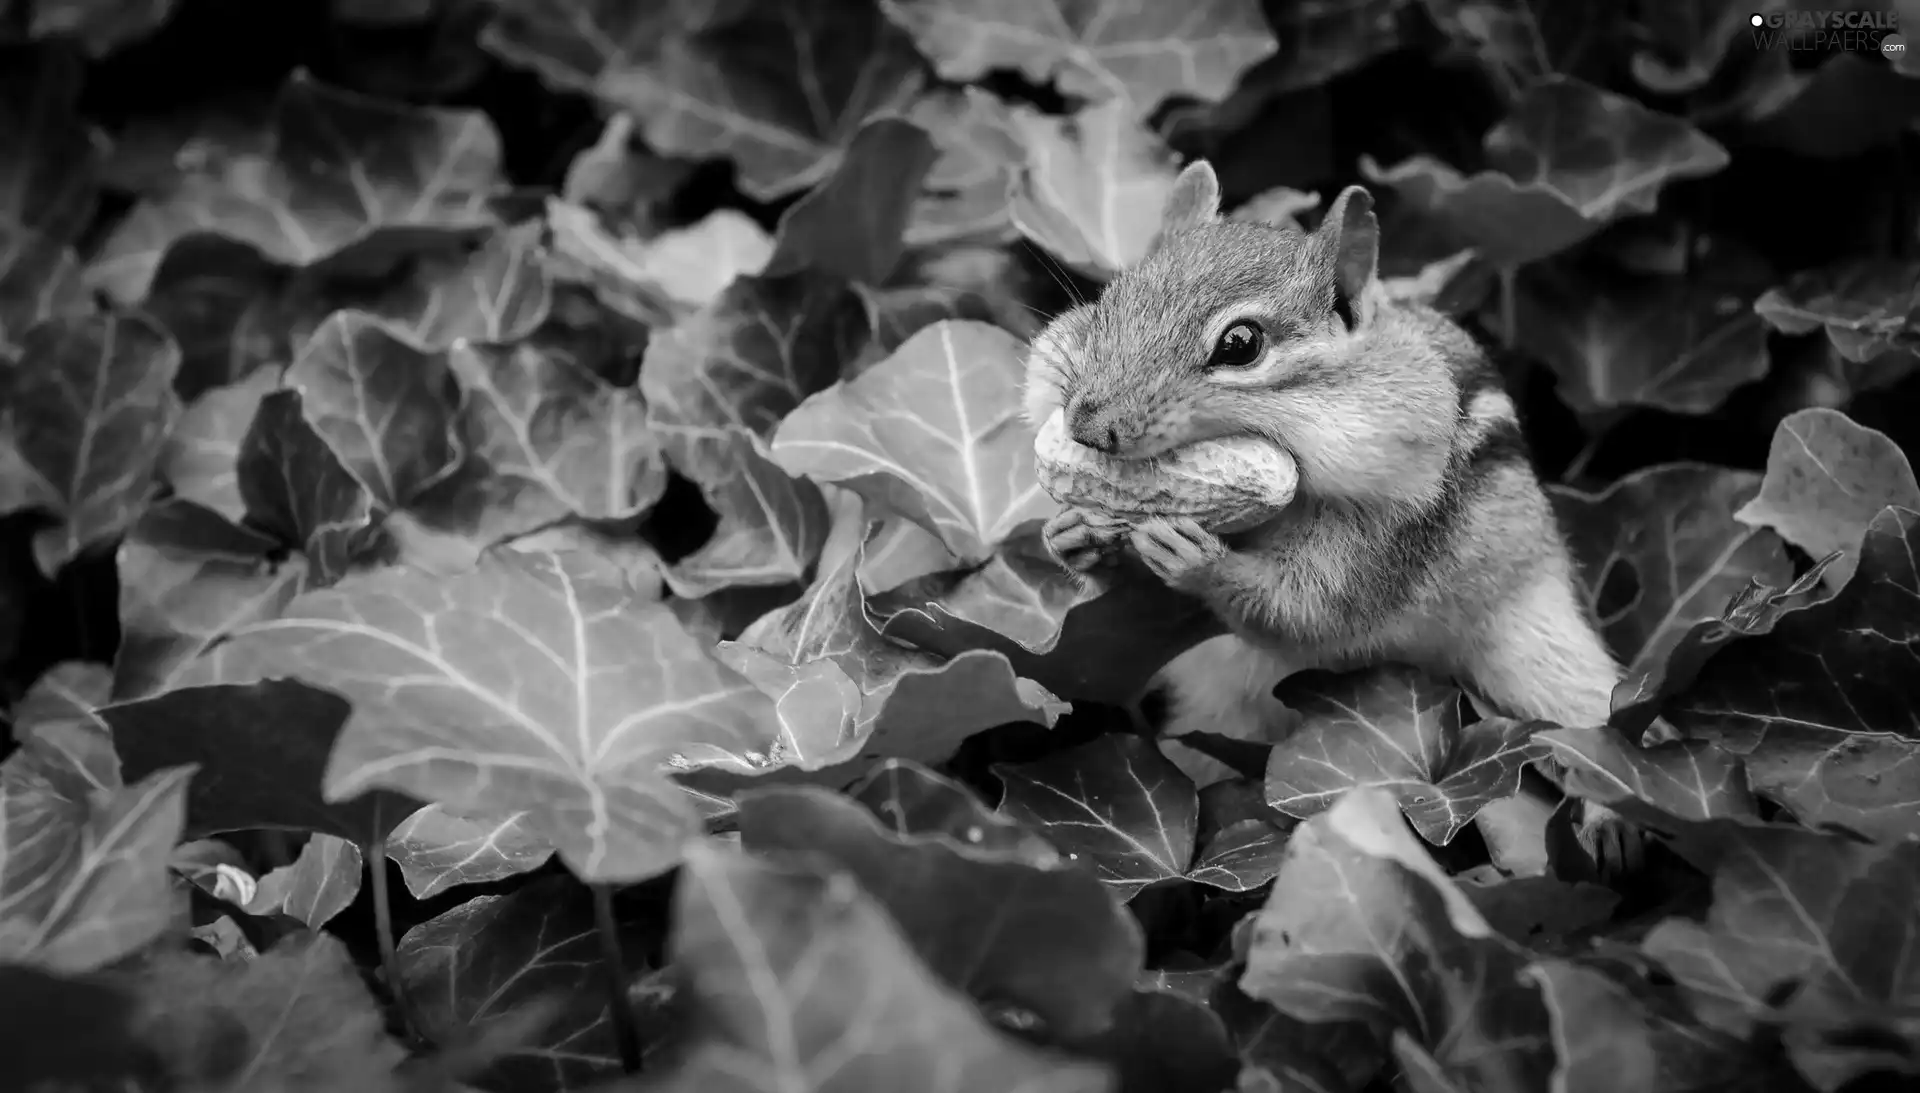 squirrel, Plants, Leaf, nut